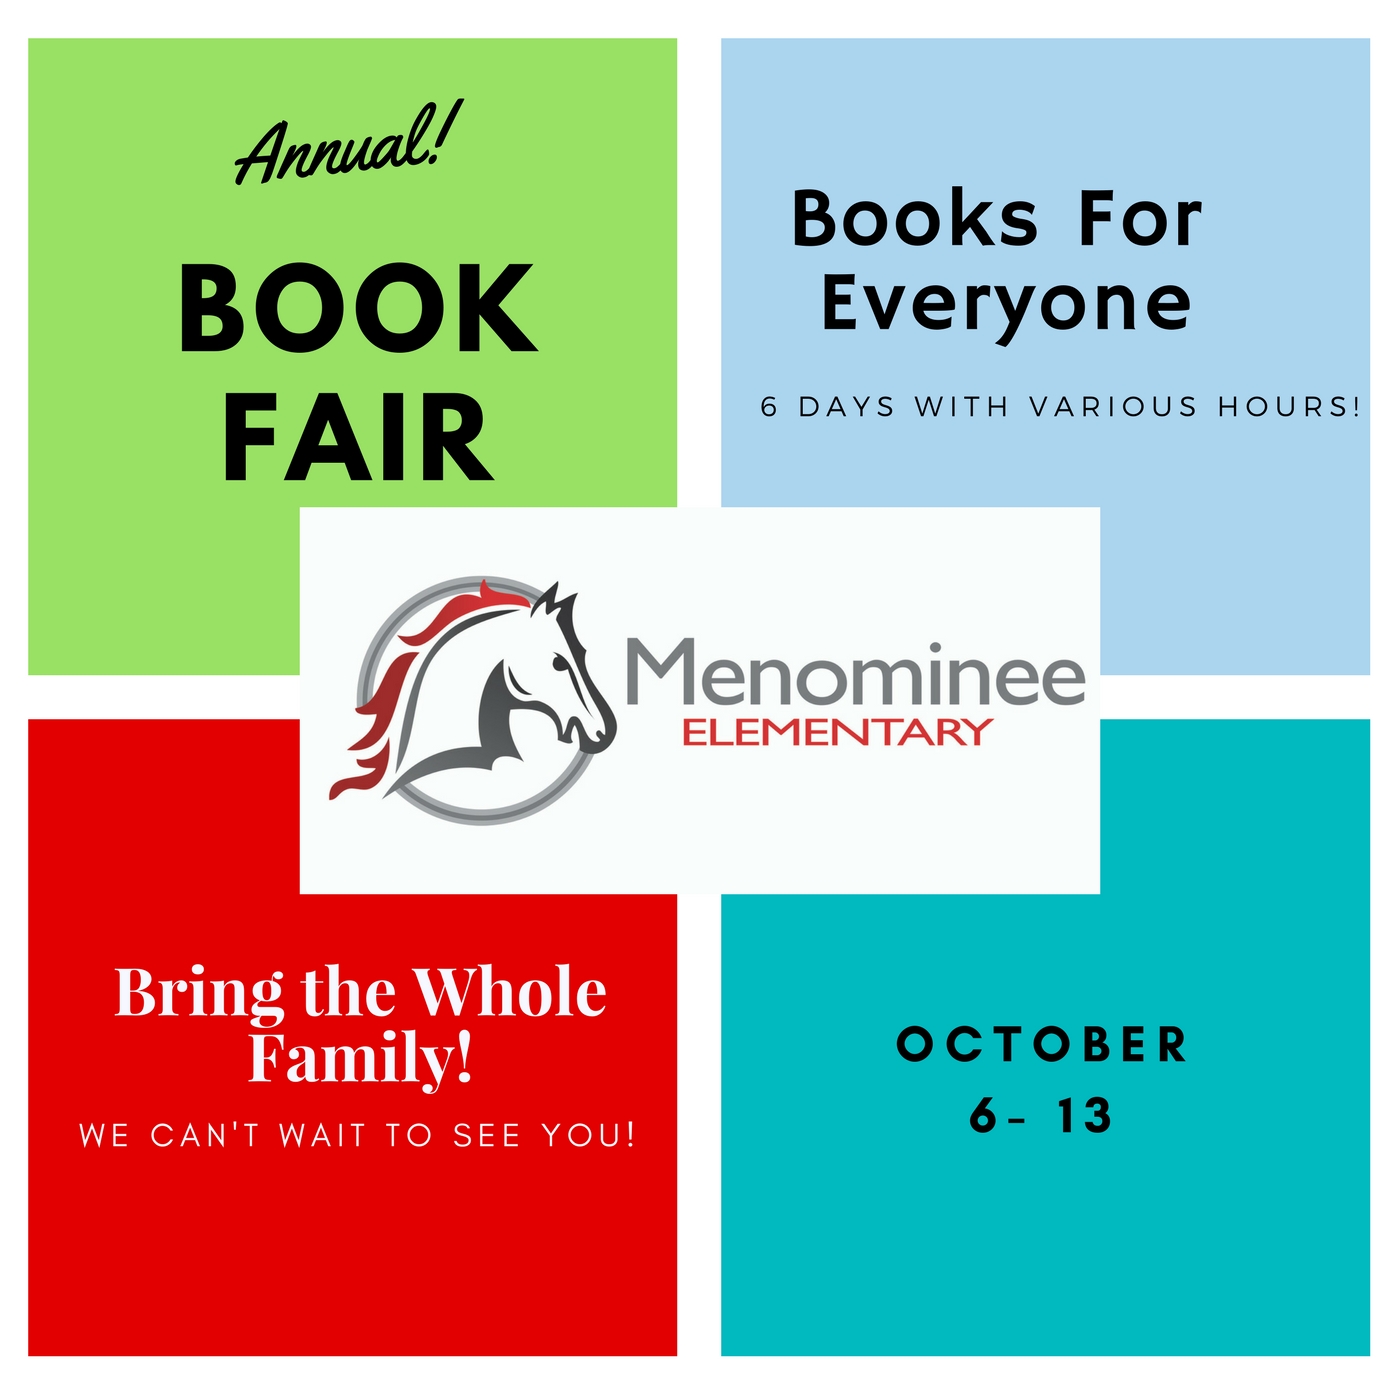 Menominee Annual Book Fair October 6-13, 2017